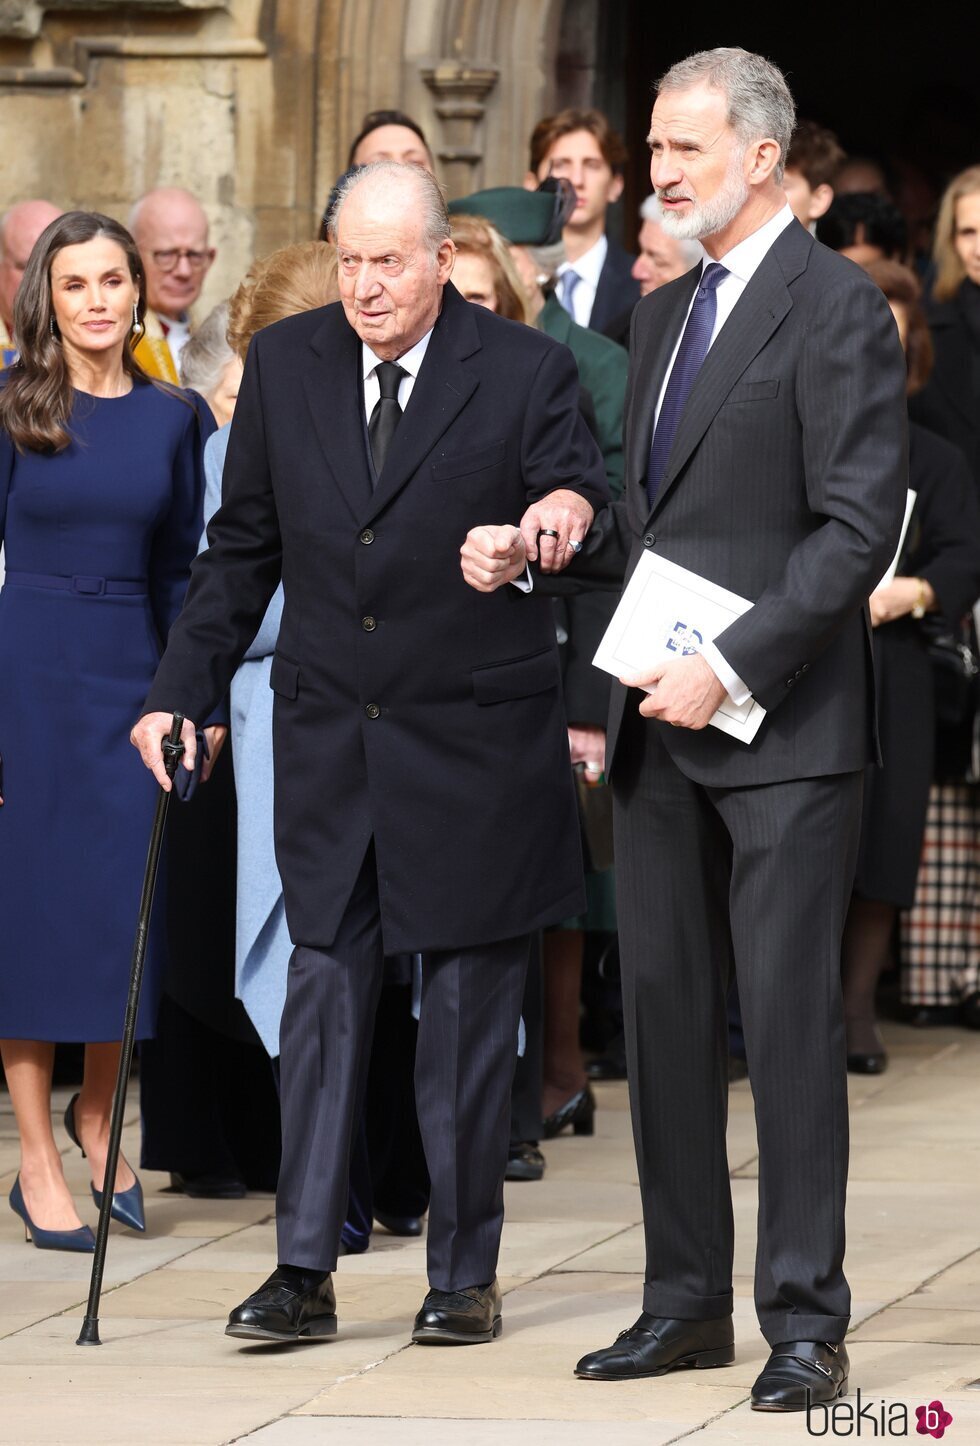 La Reina Letizia mirando al Rey Felipe y al Rey Juan Carlos en el homenaje a Constantino de Grecia